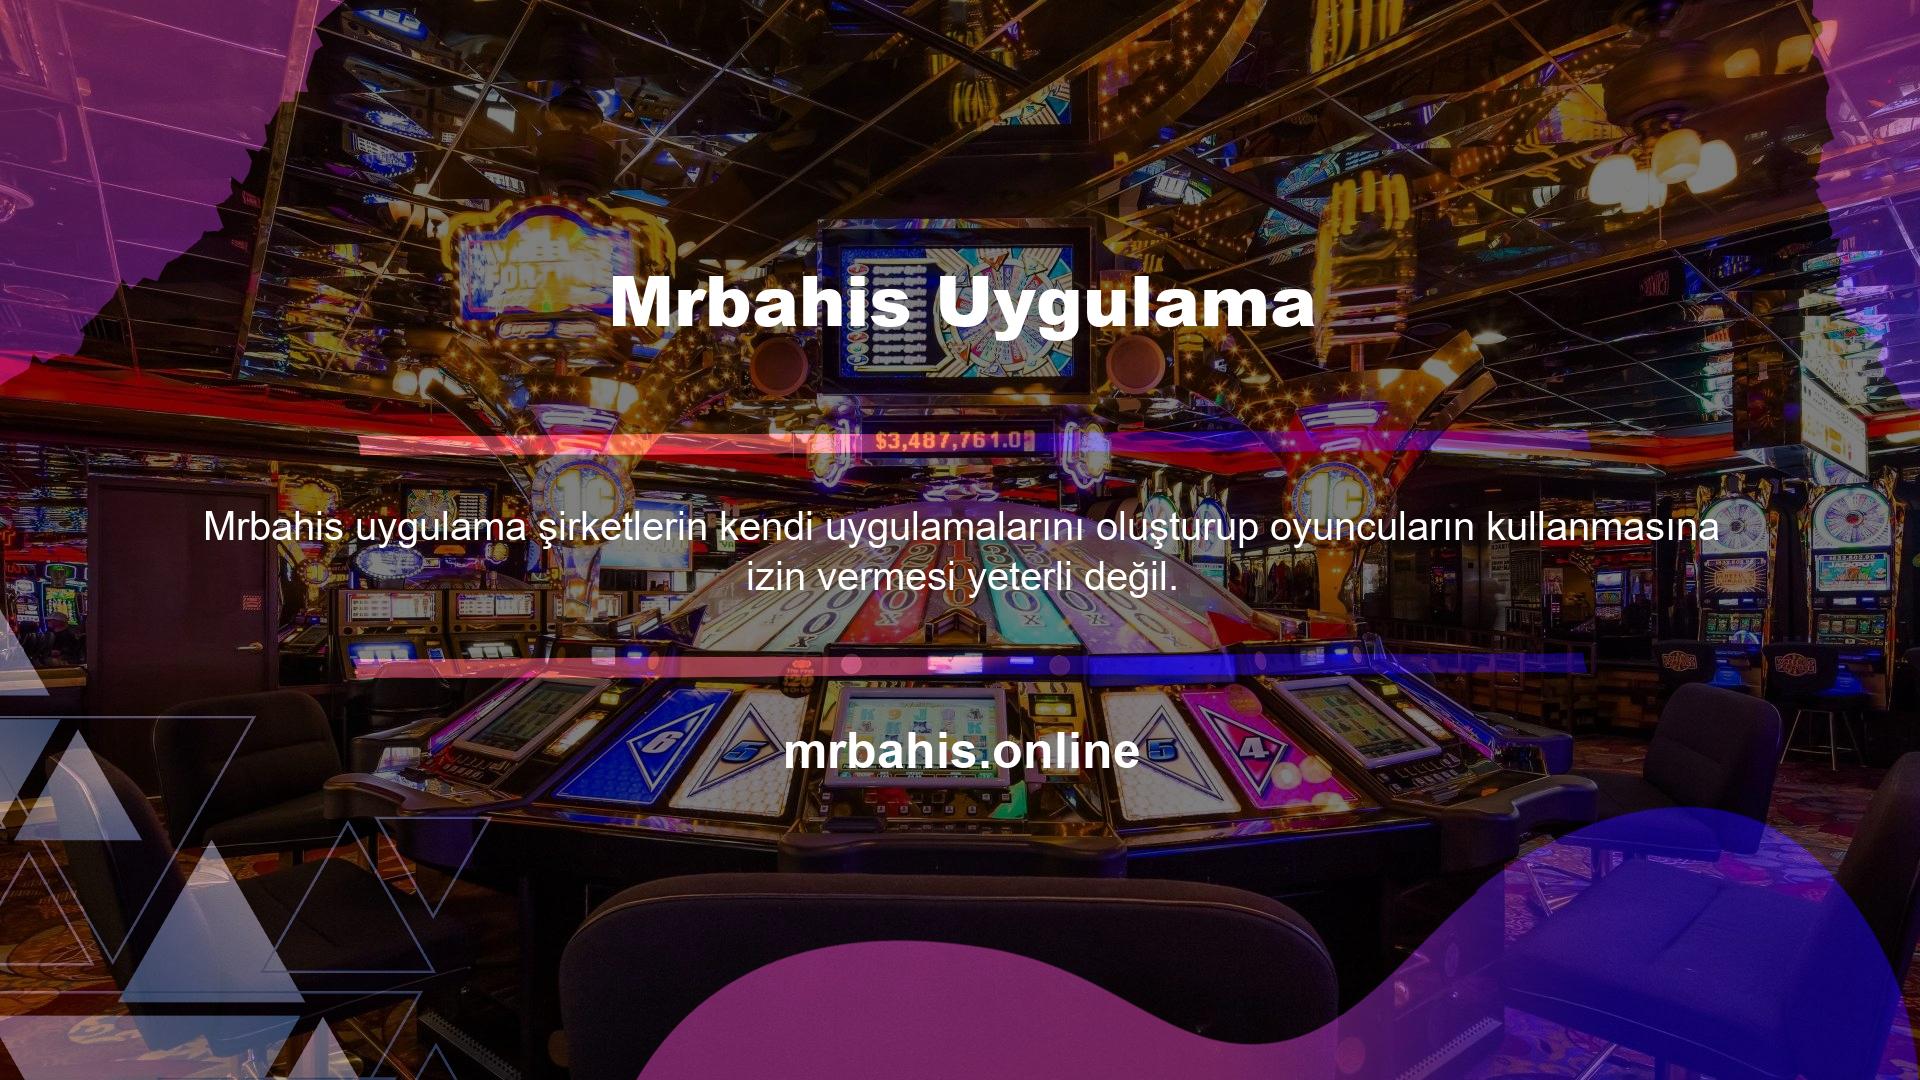 Dahili kullanıma yönelik mobil uygulamalar genellikle casino siteleri tarafından geliştirilmektedir